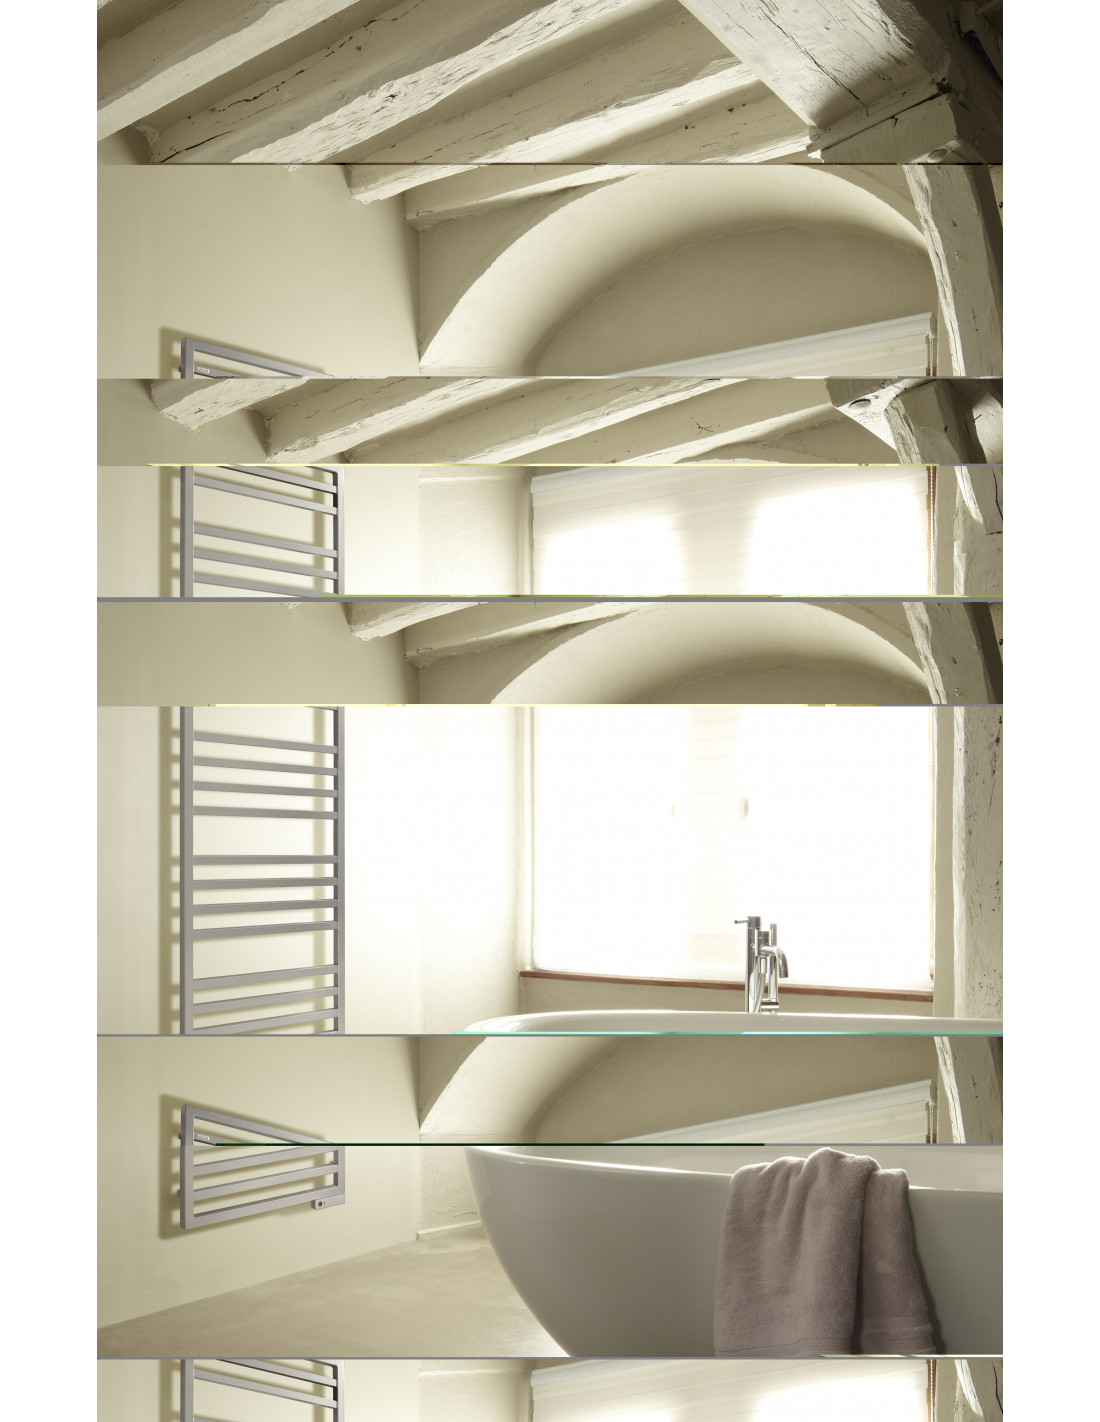 Sèche-serviette ACOVA KADRANE SPA: design contemporain pour chauffage  central